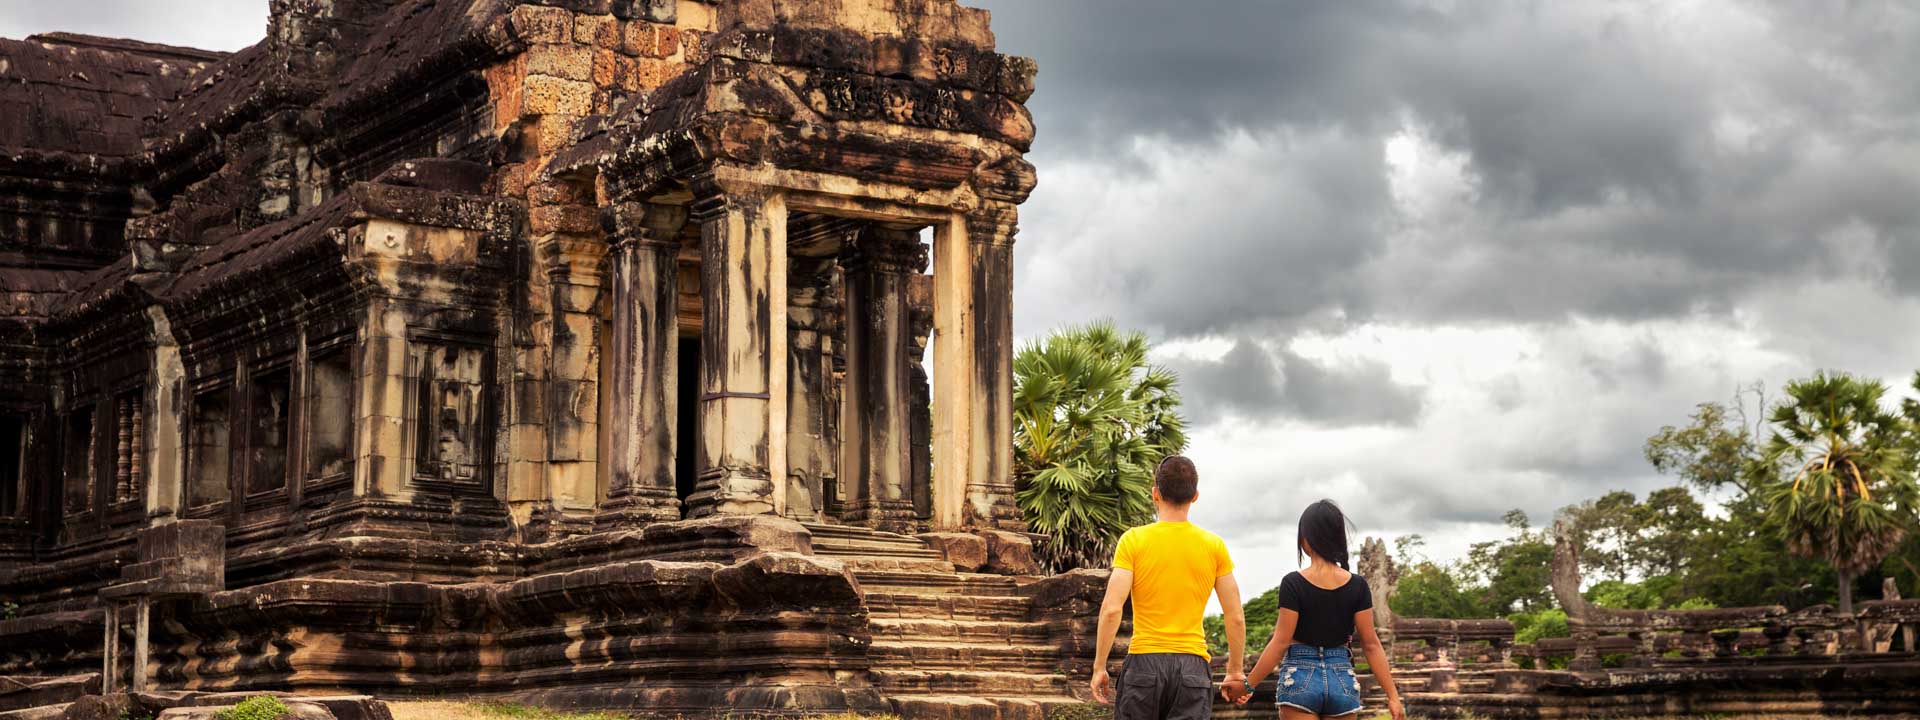 Phnom Penh e Siem Reap – due mondi in solo regno nei 4 giorni